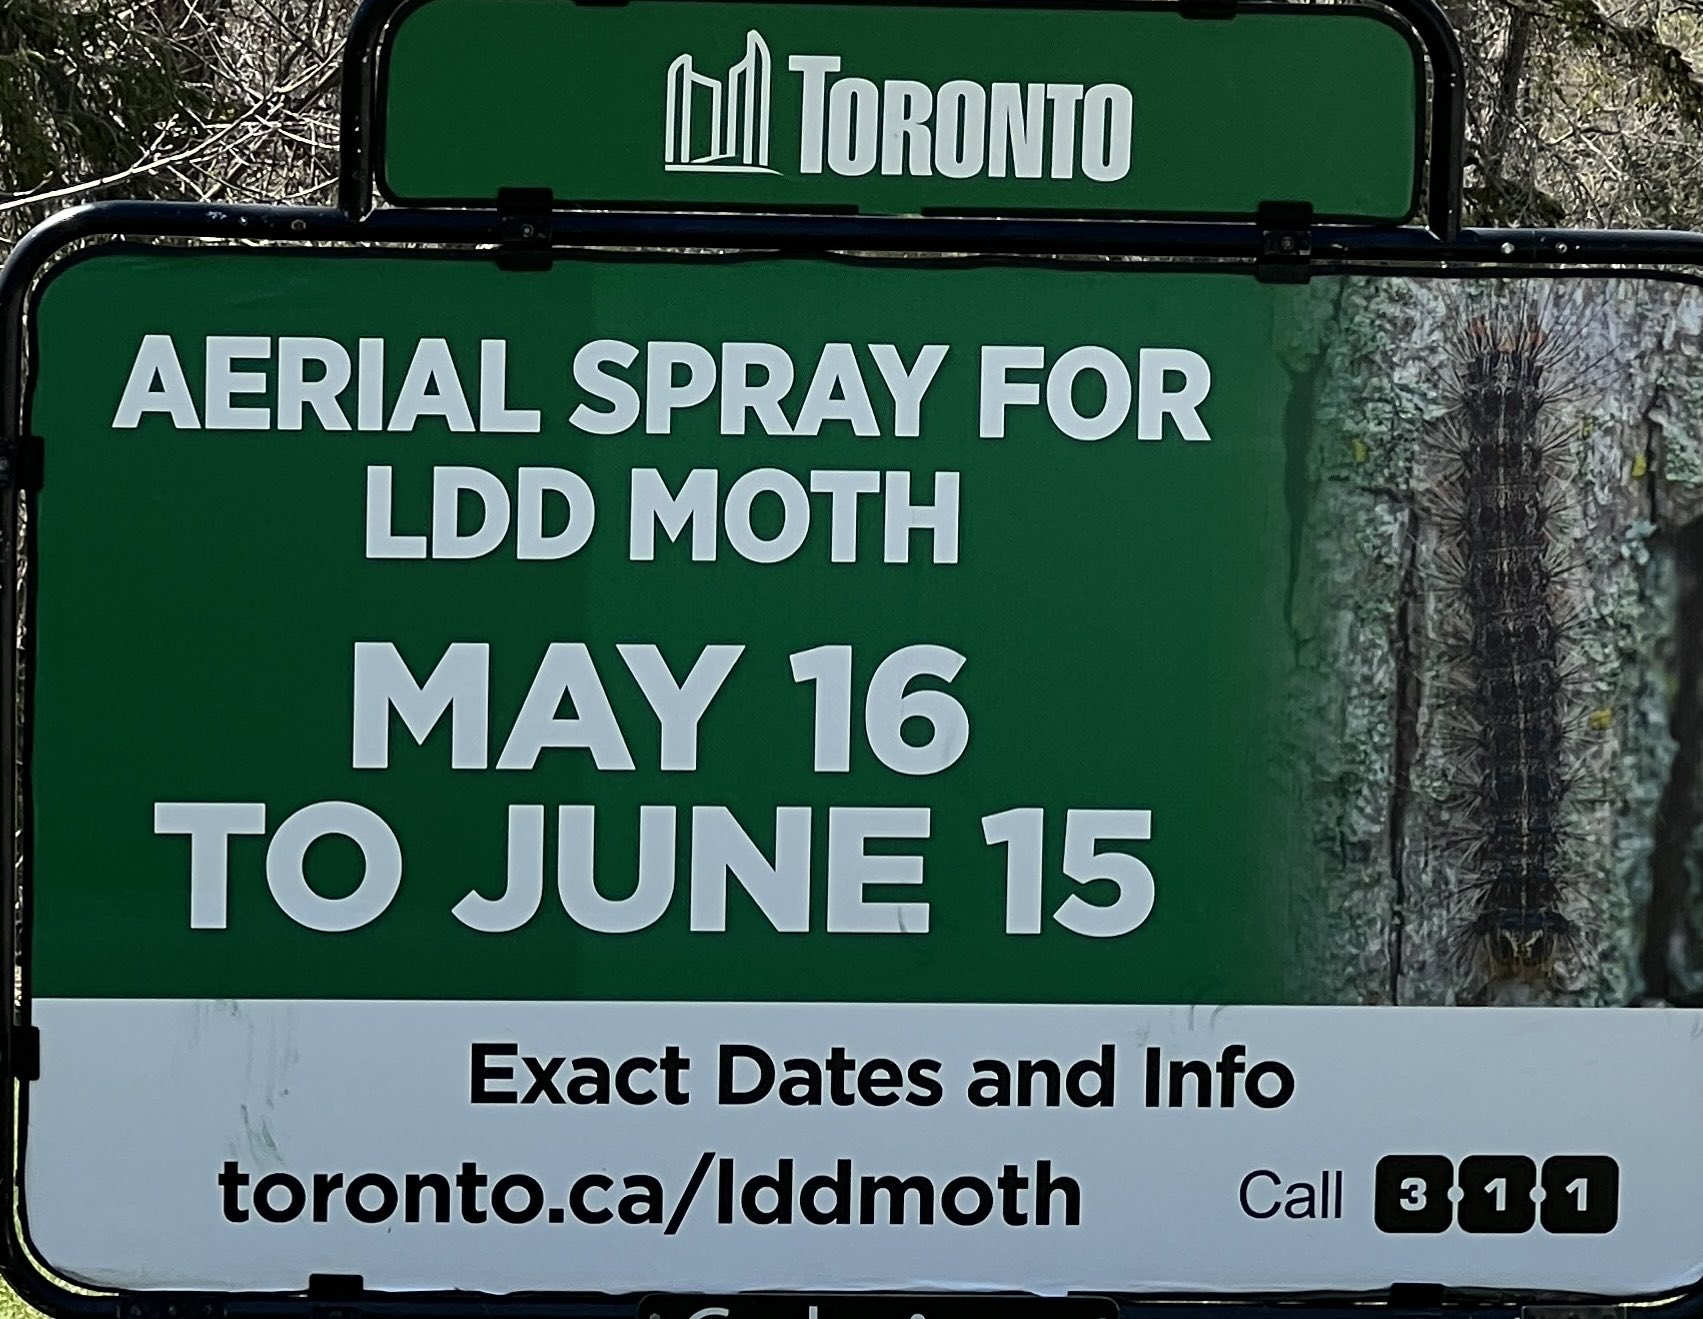 LDD moth aerial spray